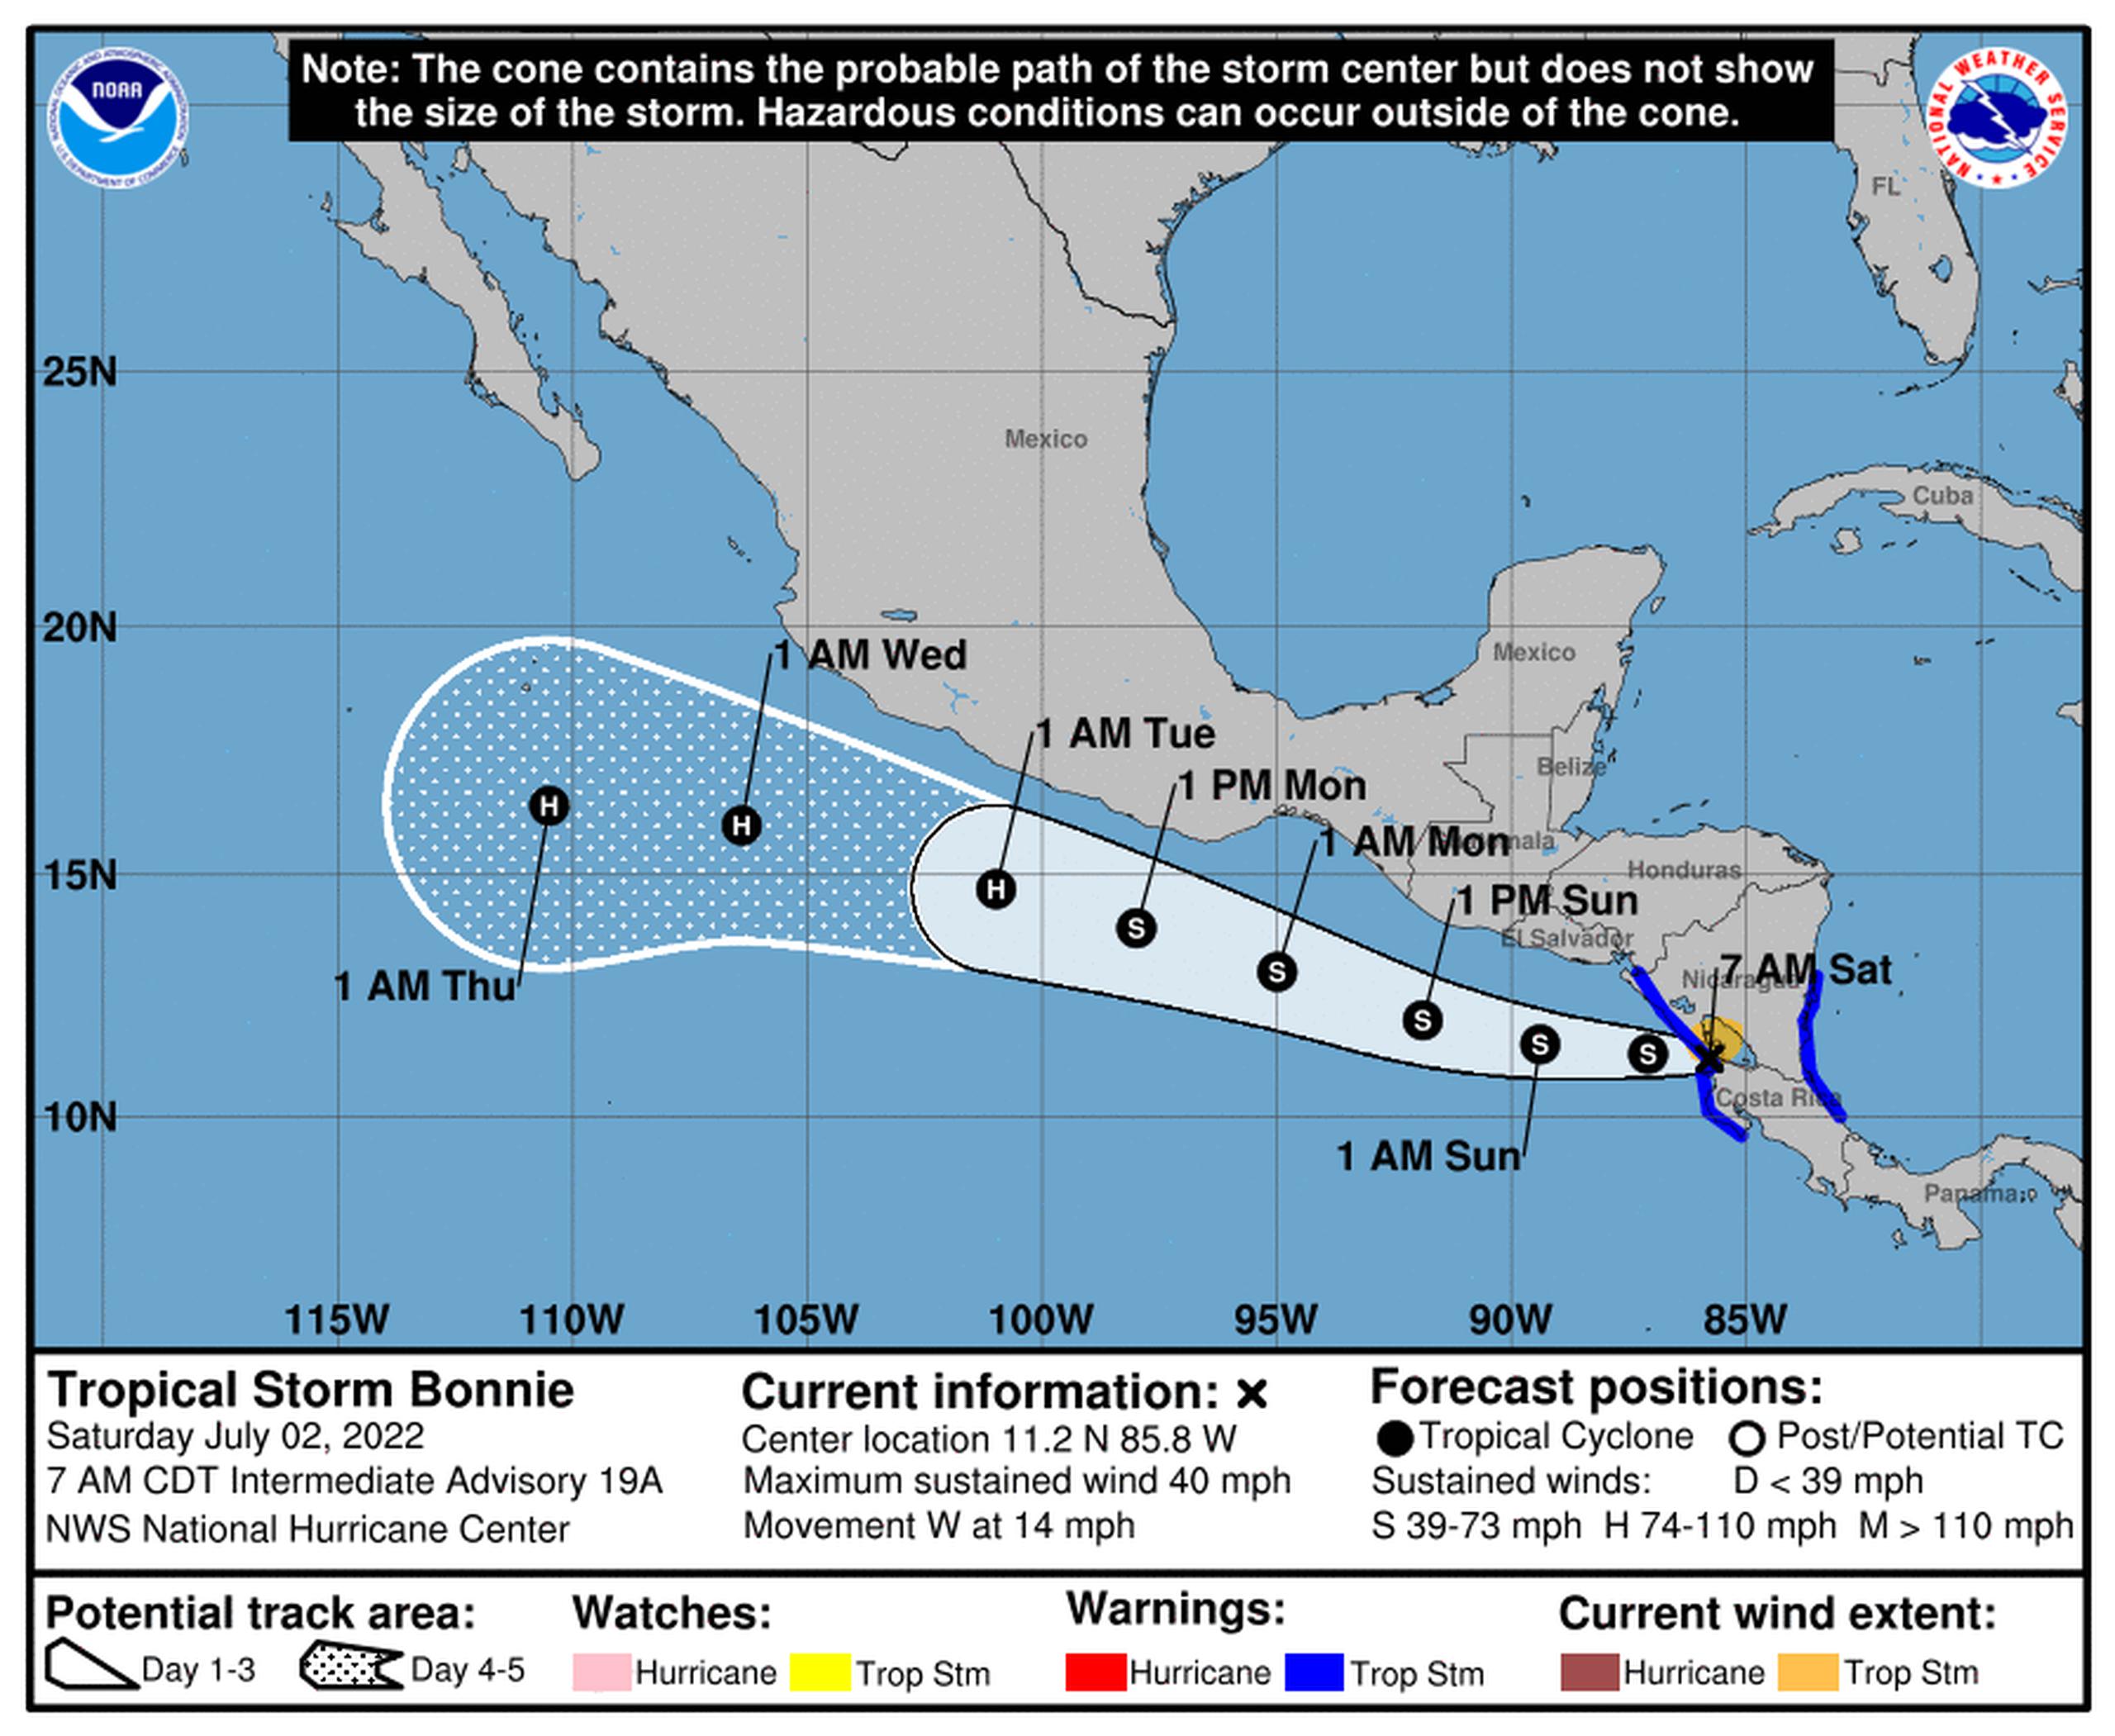 El Centro Nacional de Huracanes (NHC por sus siglas en inglés) en Miami advirtió que Bonnie podría causar fuertes lluvias durante los próximos días en algunas regiones de Guatemala y el suroeste de México.